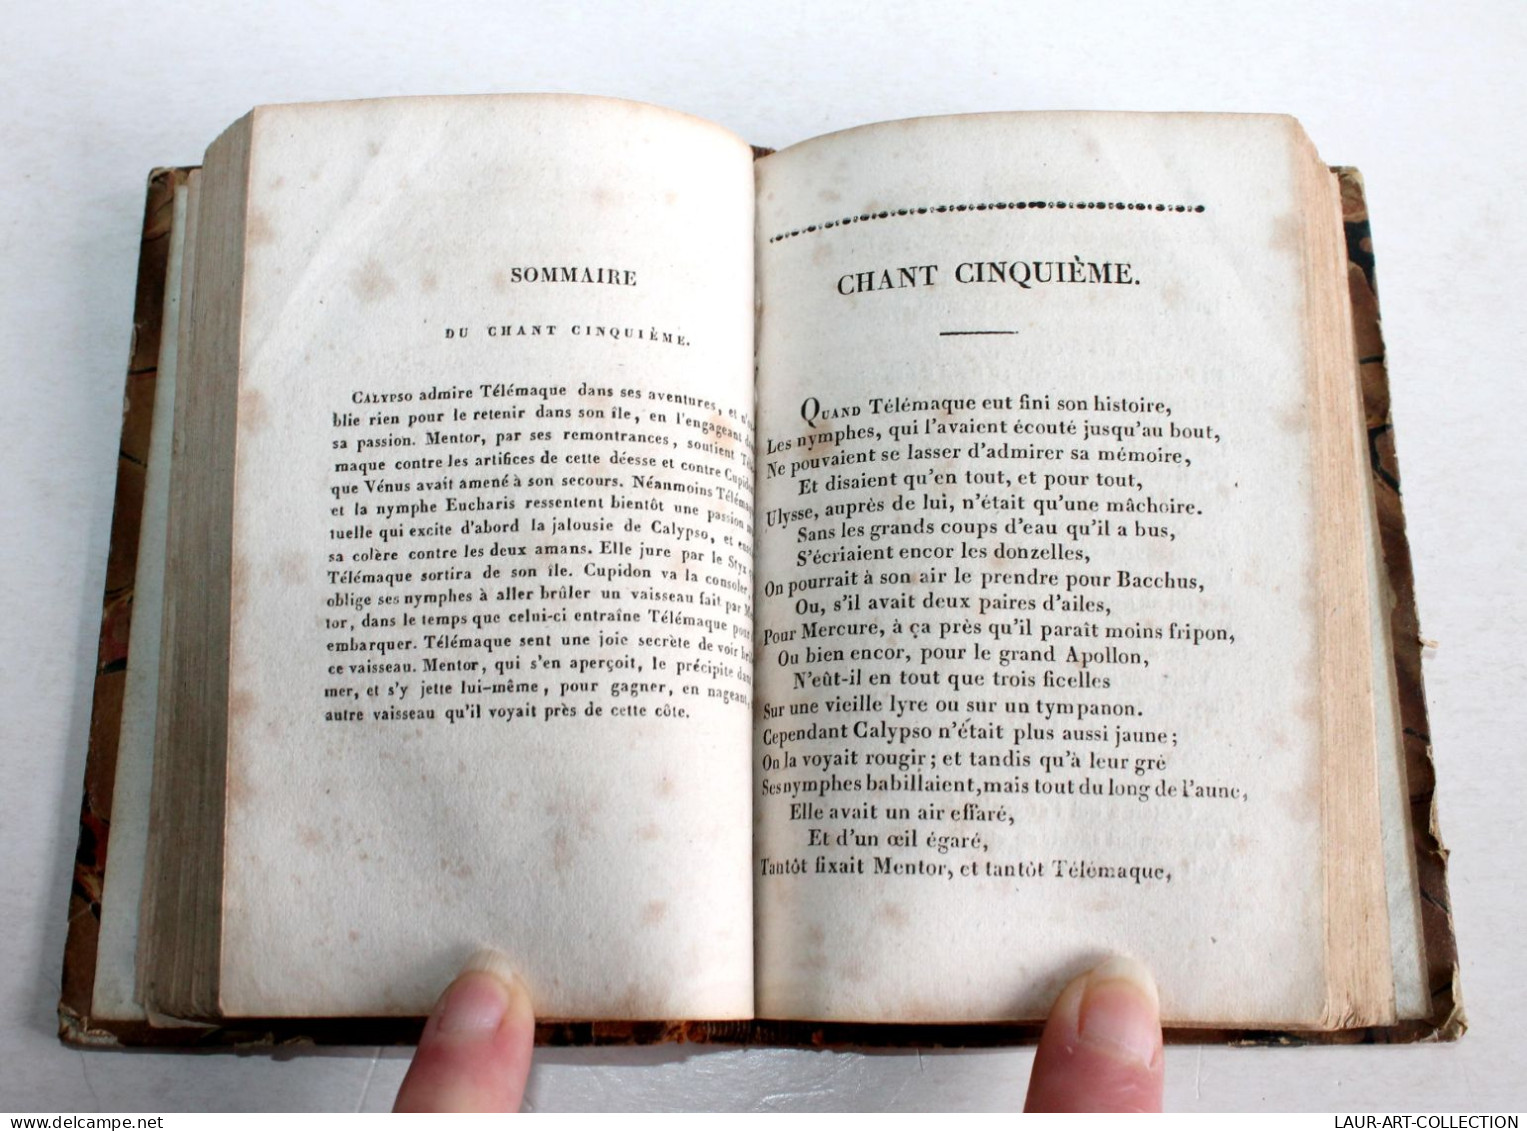 TELEMAQUE TRAVESTI POEME HEROI-COMIQUE EN VERS LIBRE Par PARIGOT 3e EDITION 1825 / ANCIEN LIVRE XIXe SIECLE (1803.129) - Autores Franceses